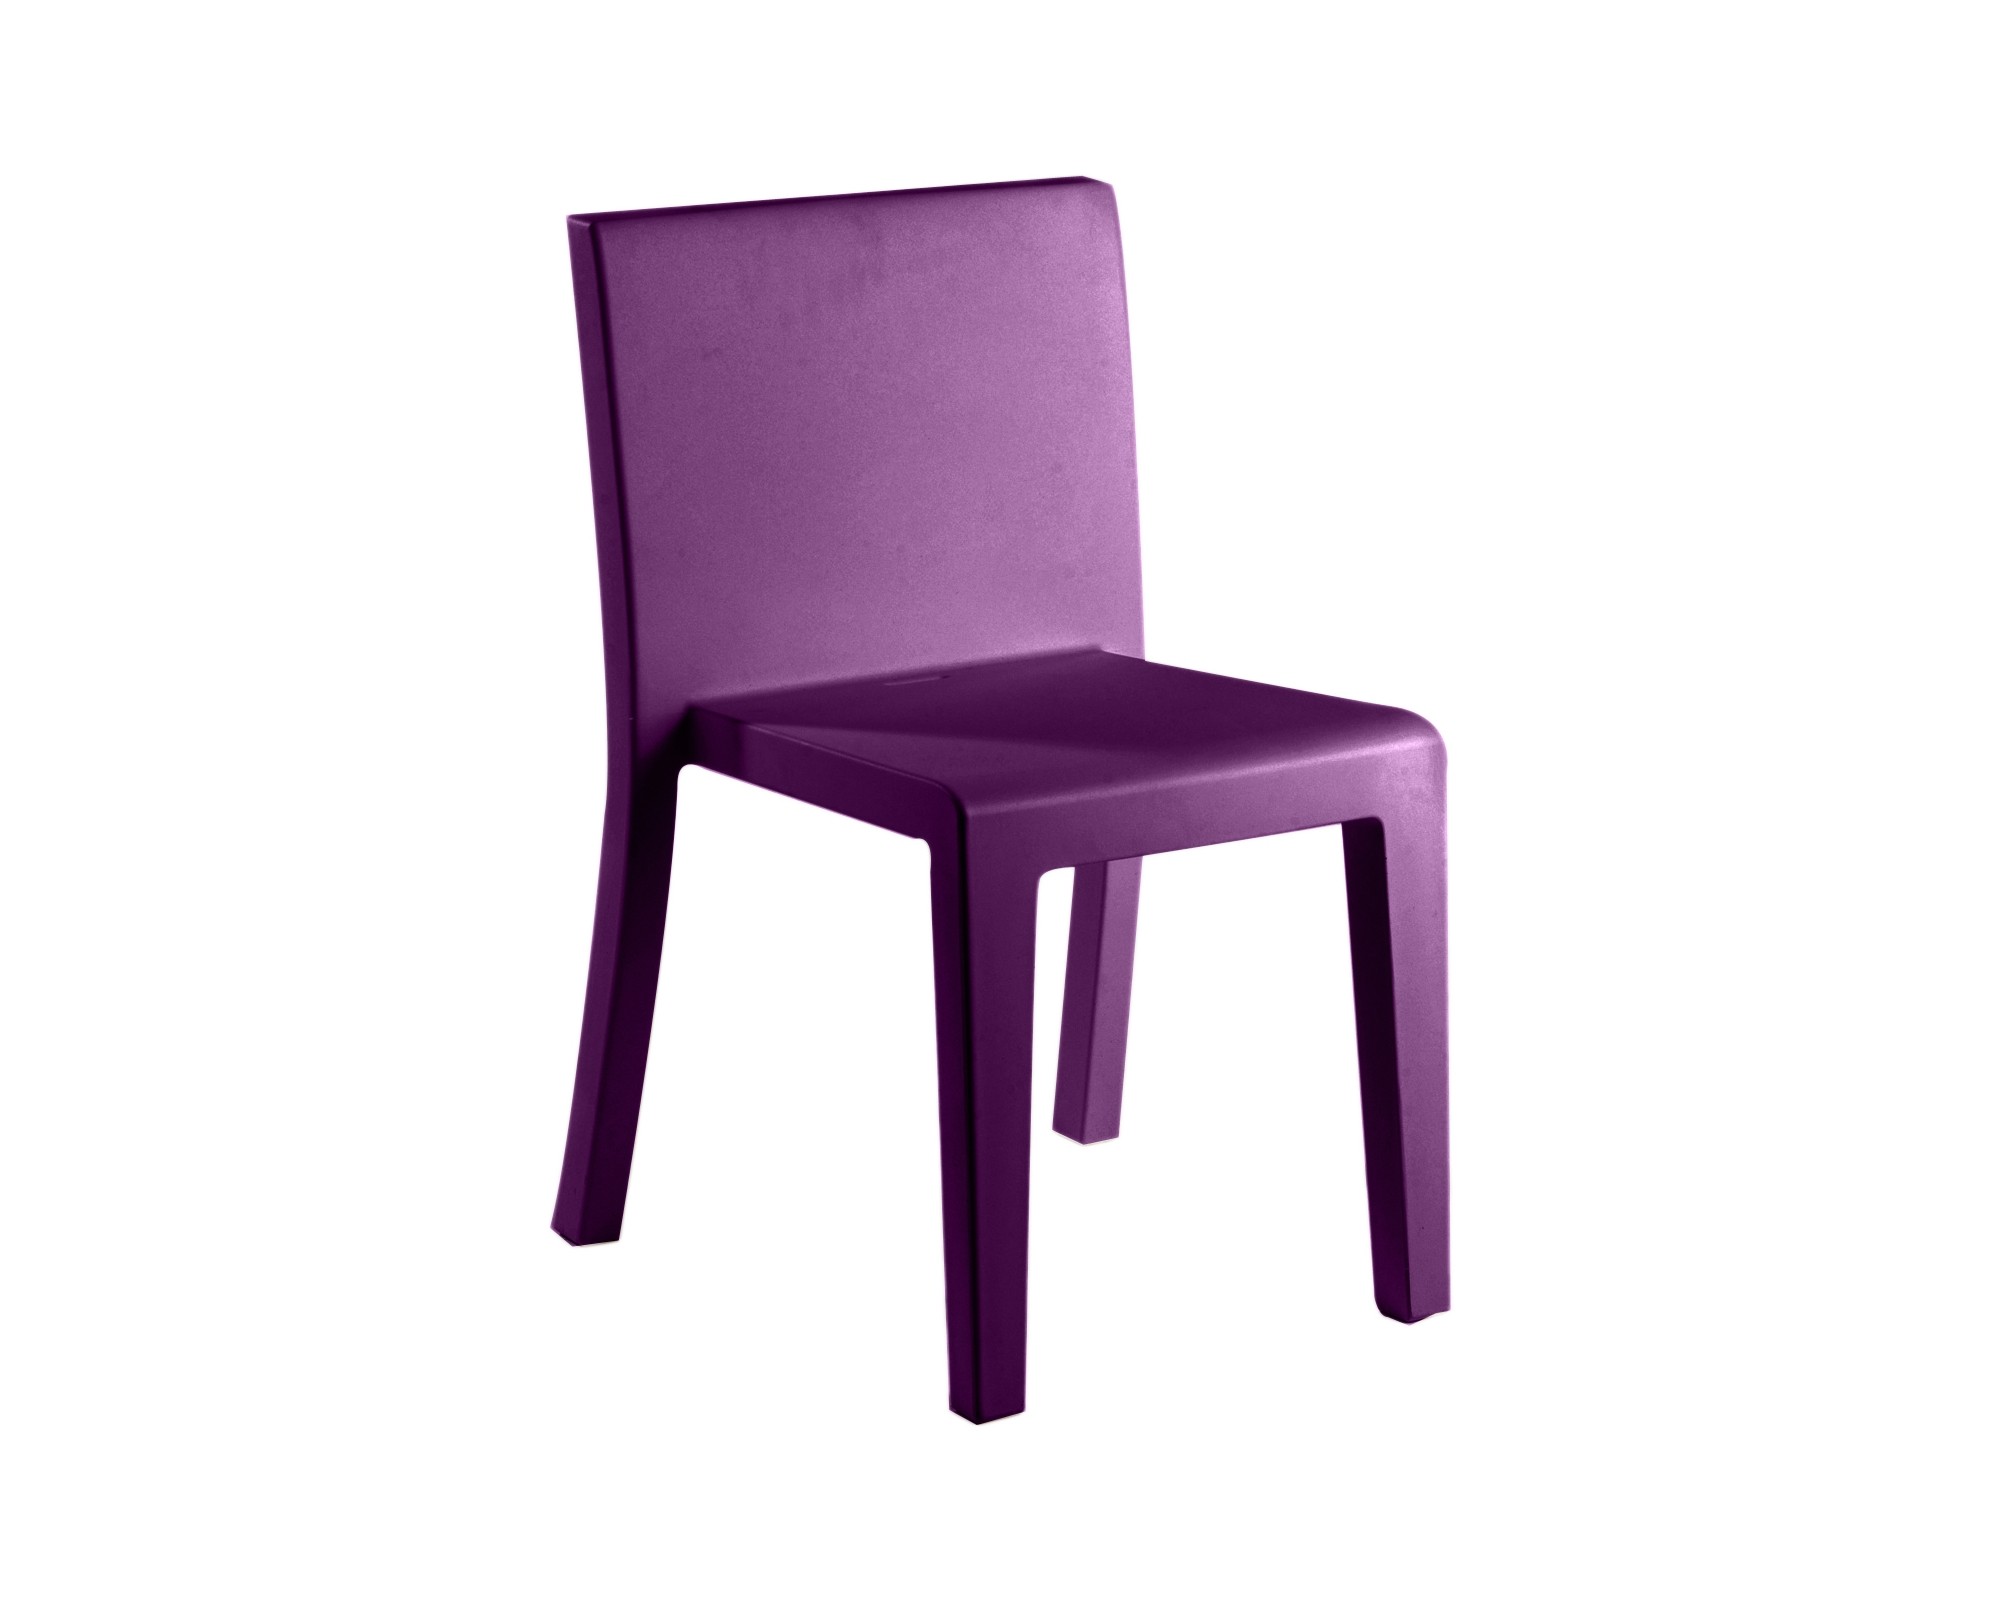 Jut Chair